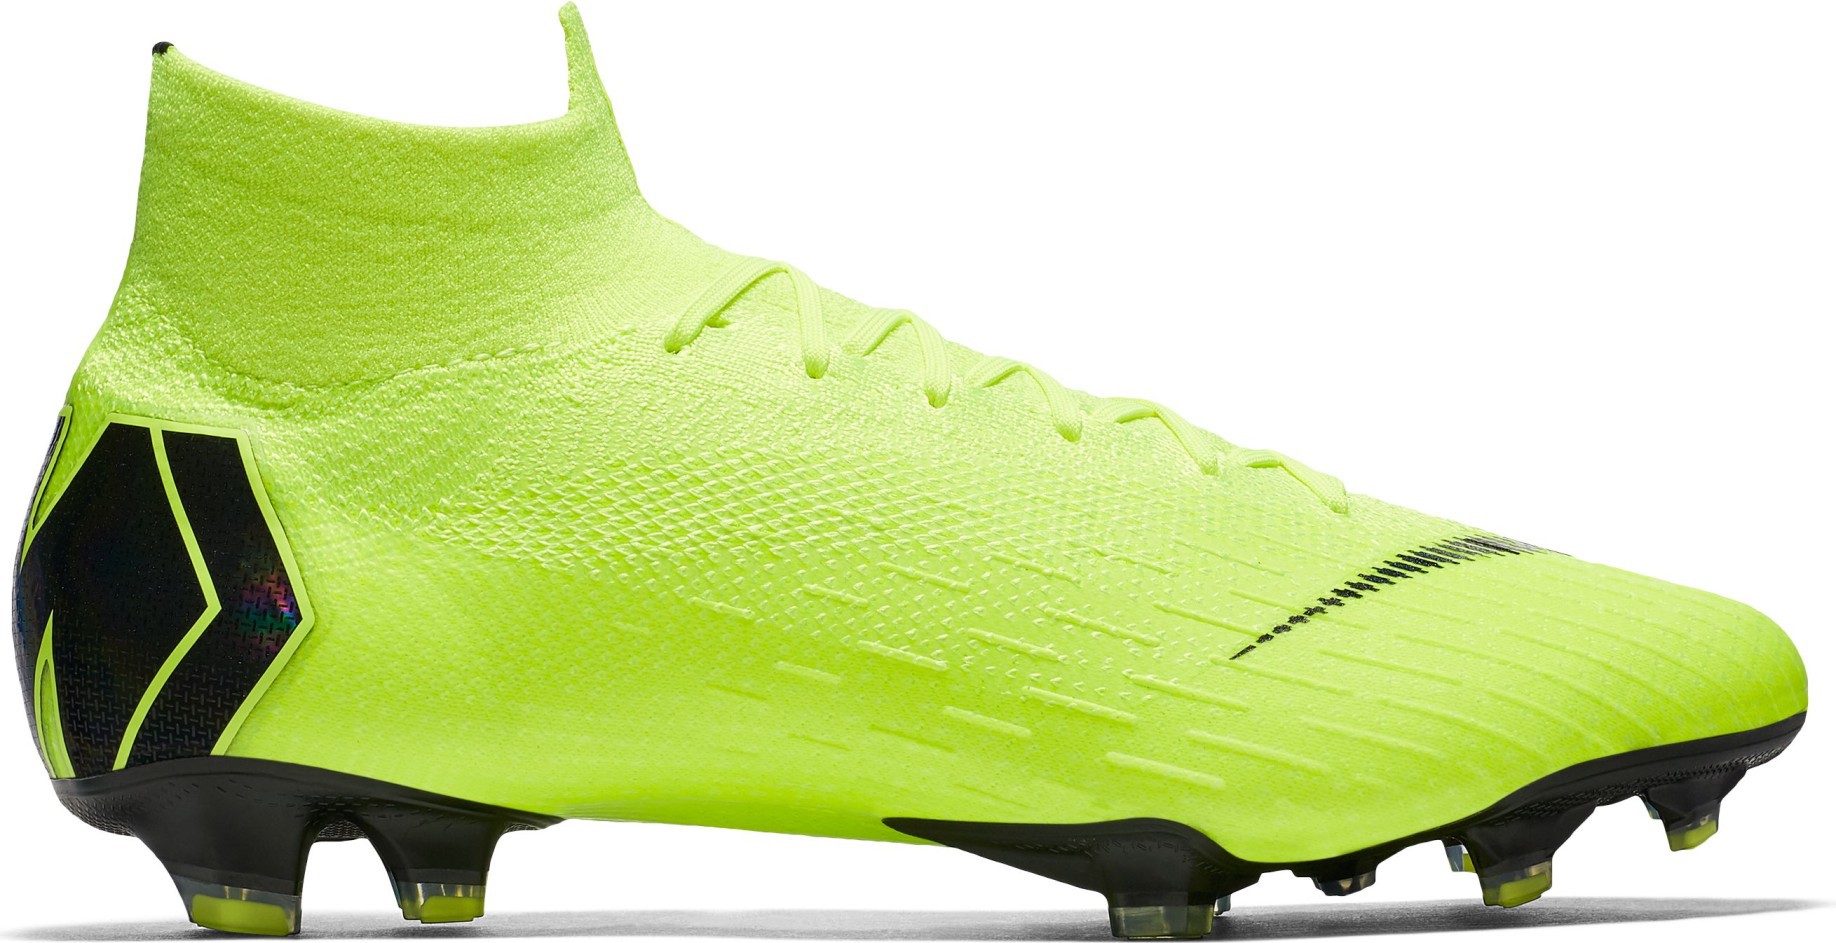 Zapatos de fútbol Mercurial Superfly VI FG Siempre hacia Adelante Pack colore amarillo negro Nike -